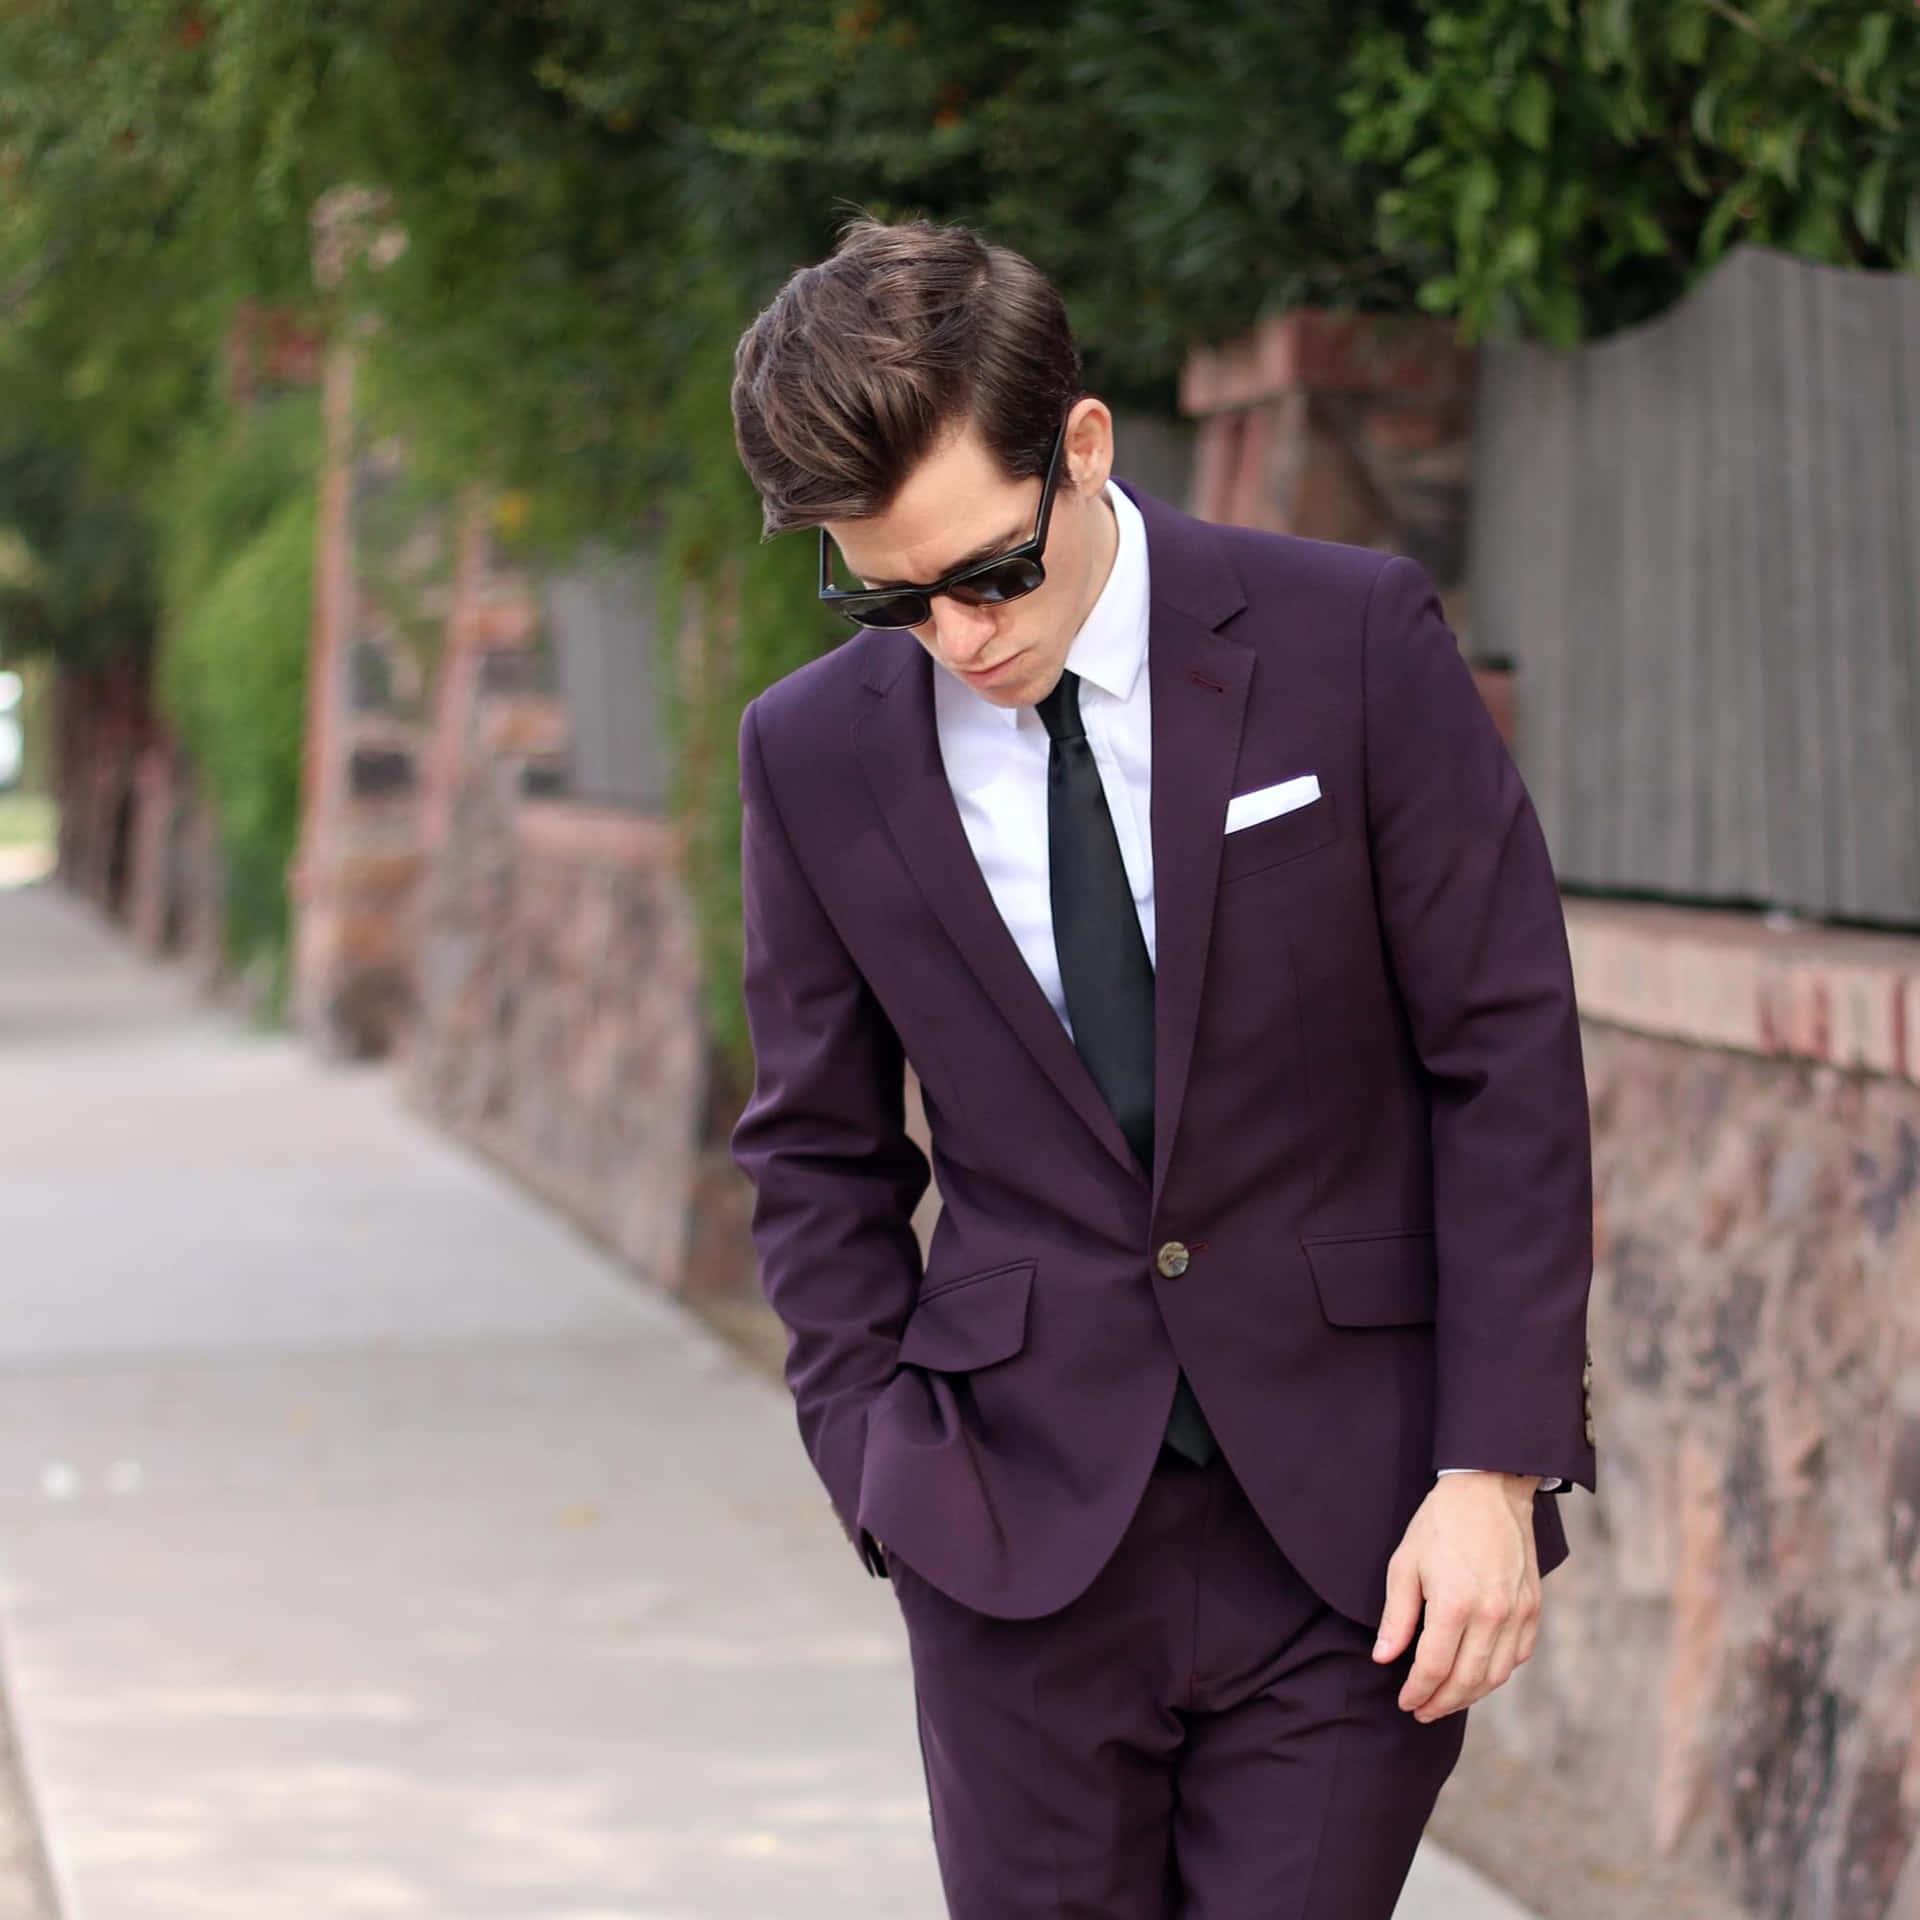 A Man In A Purple Suit Walking Down The Sidewalk